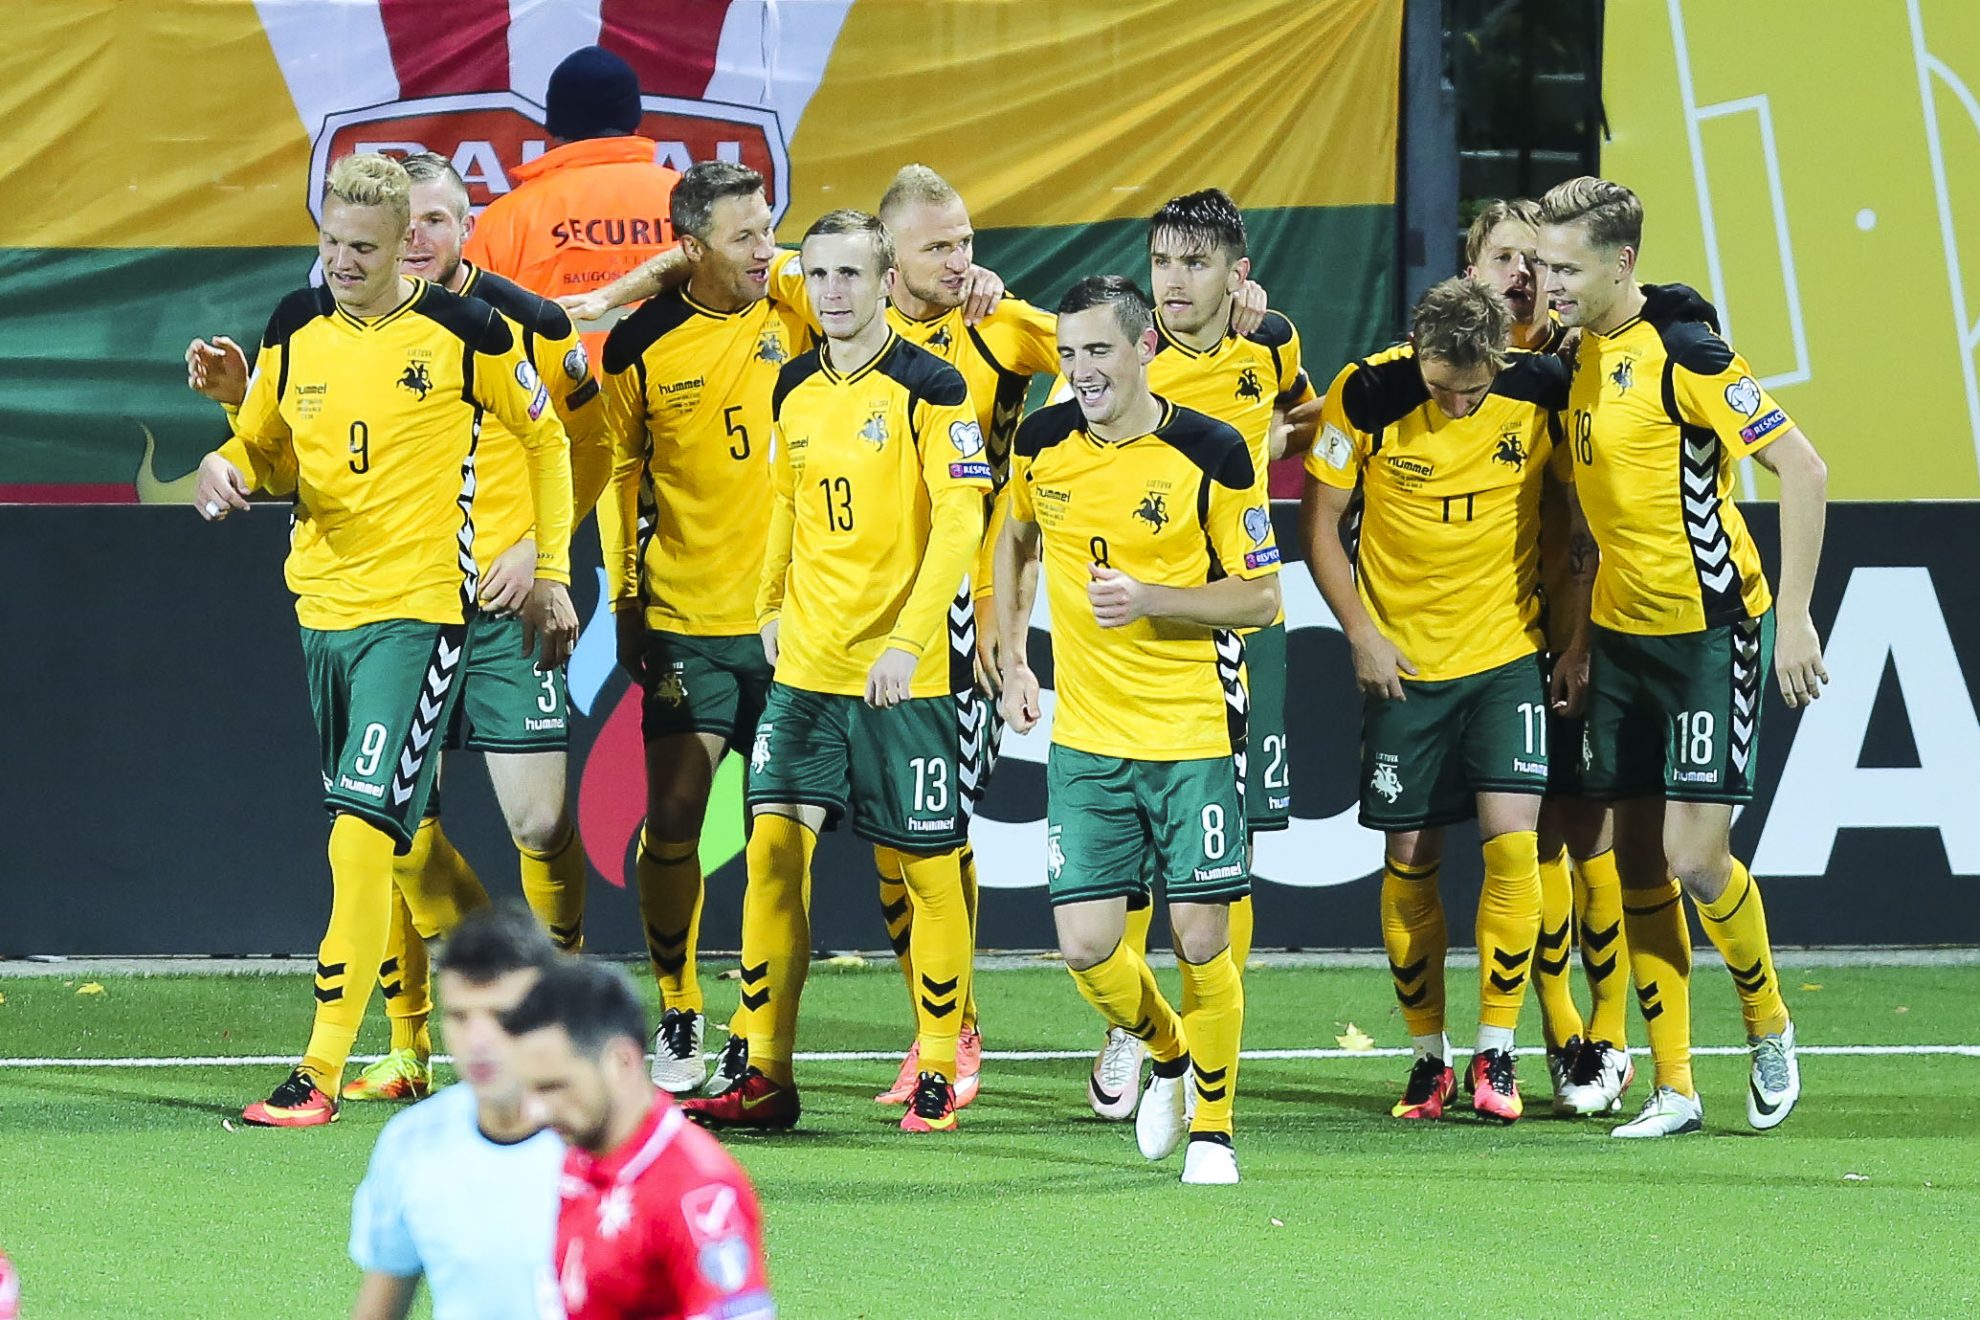 Ketvirtadienį atnaujintame FIFA vyrų futbolo rinktinių reitinge Lietuvos rinktinė užėmė 109-ąją vietą ir prarado keturias pozicijas.